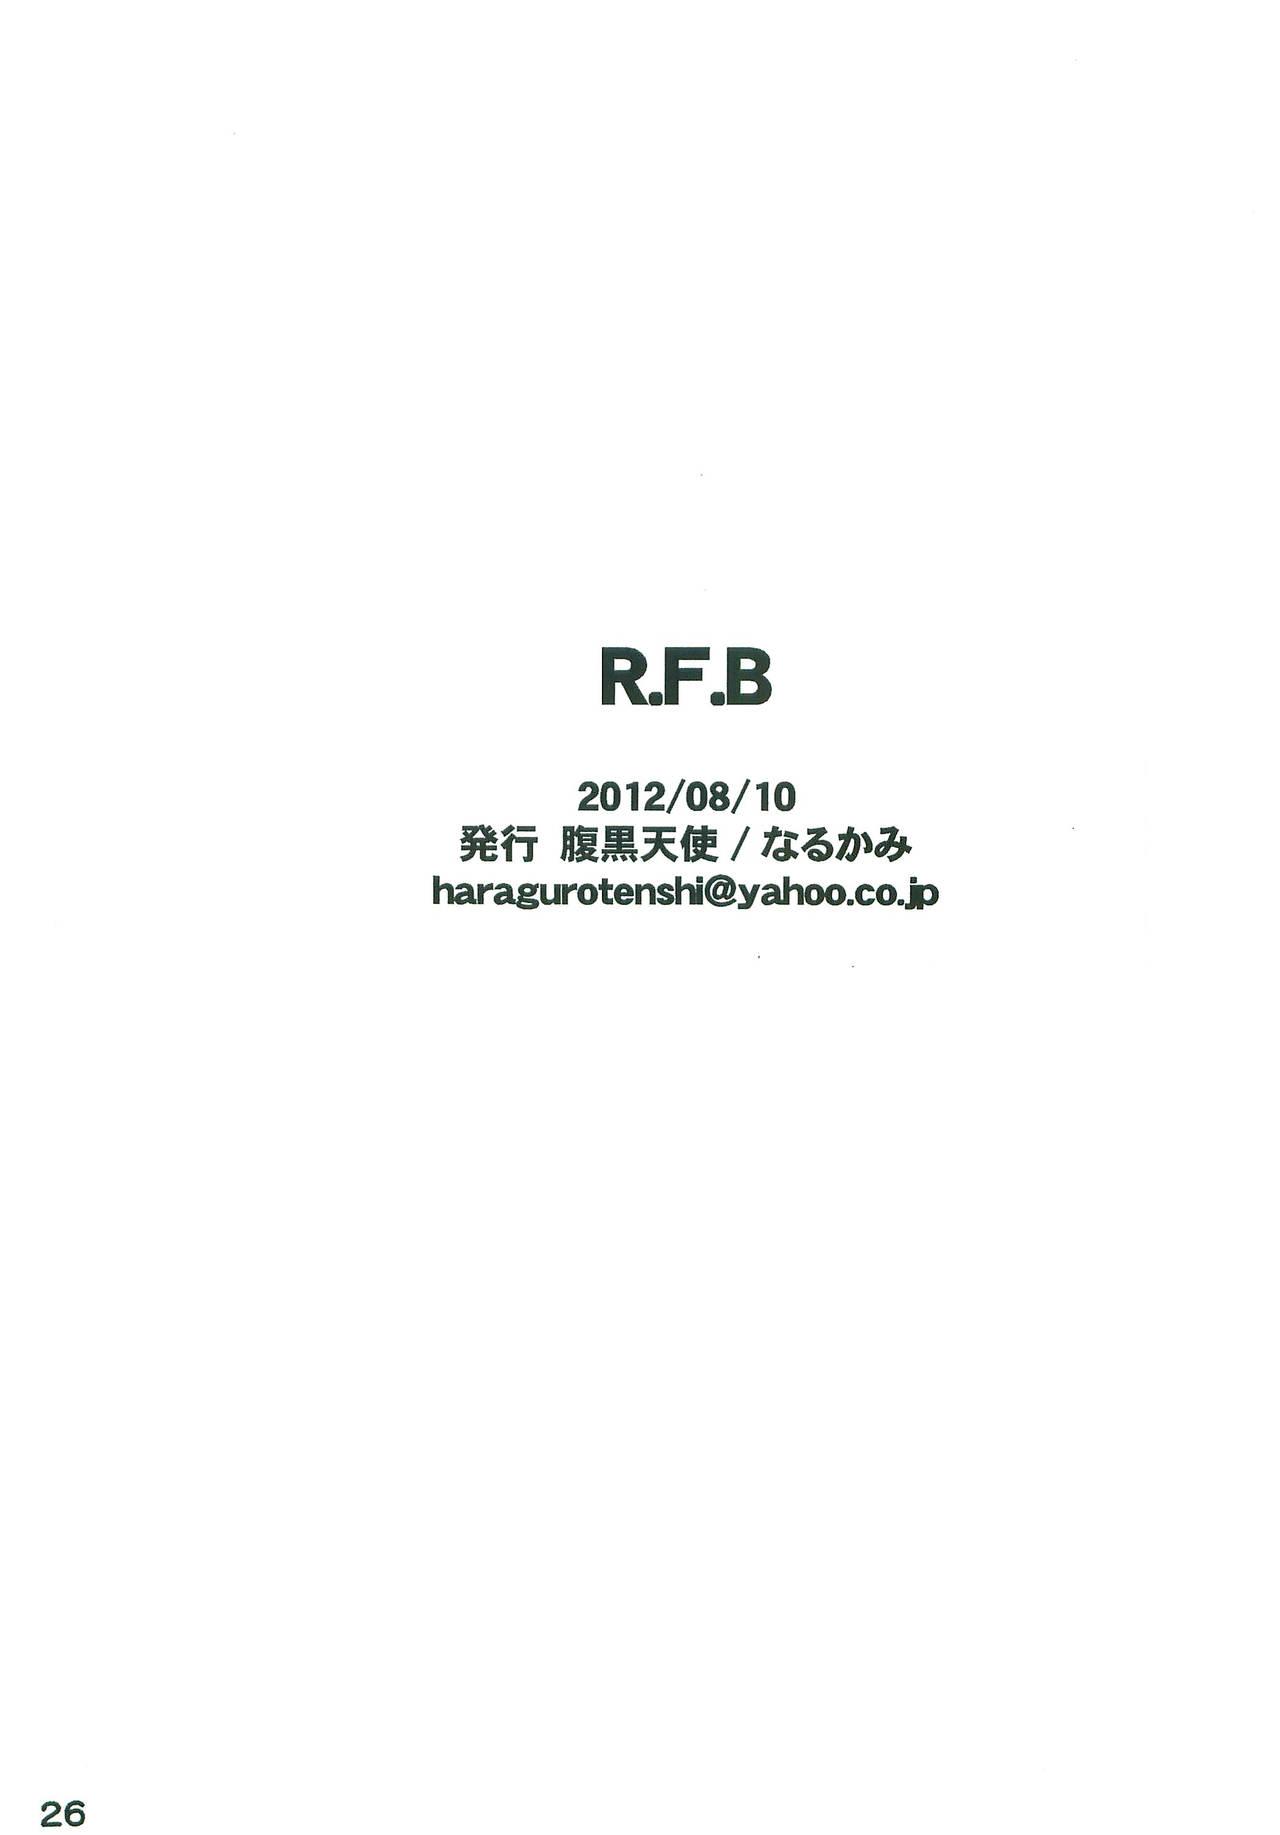 R.F.B 24